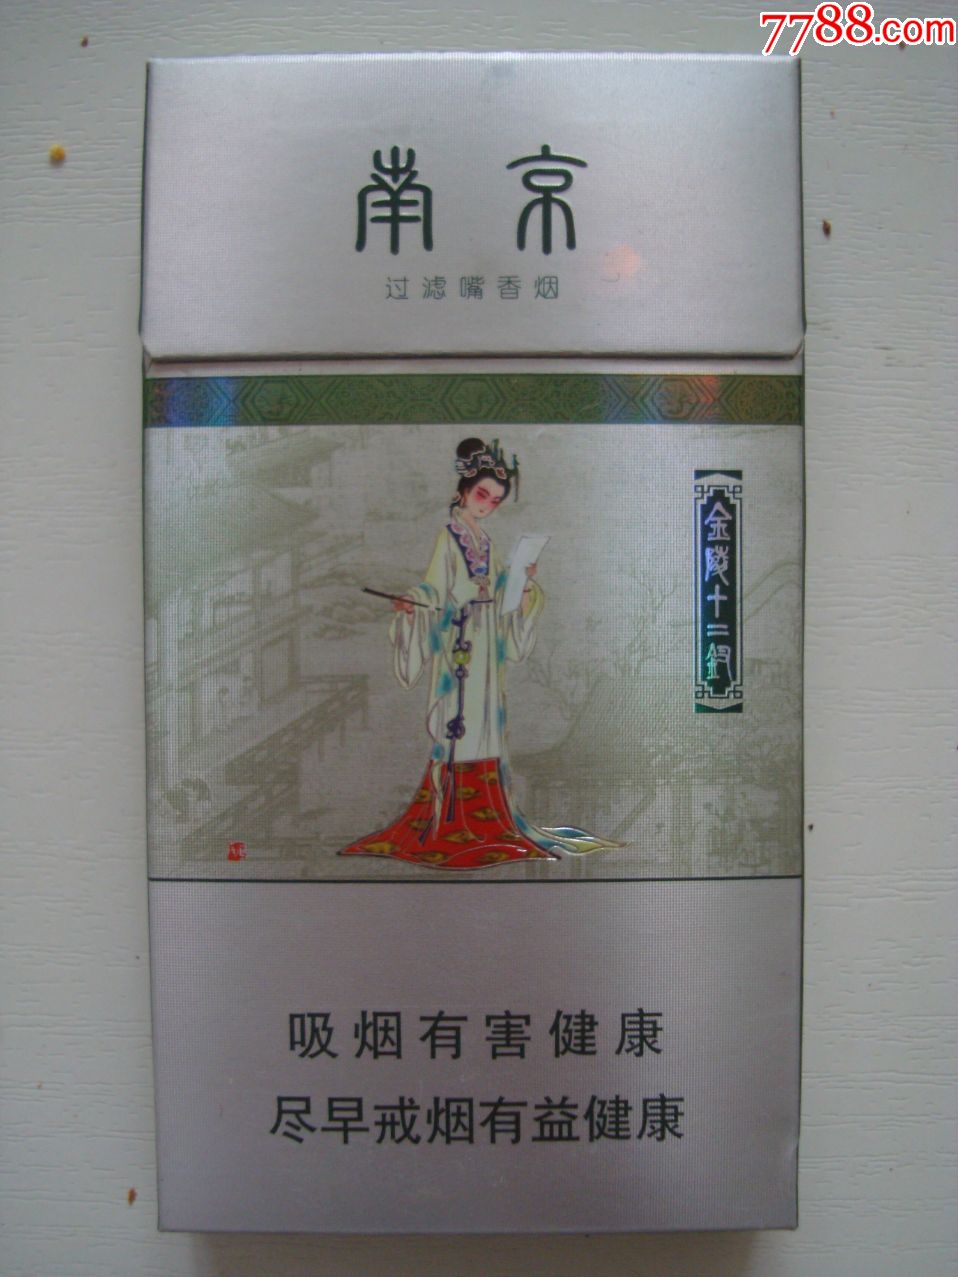 南京十二钗人物图案图片